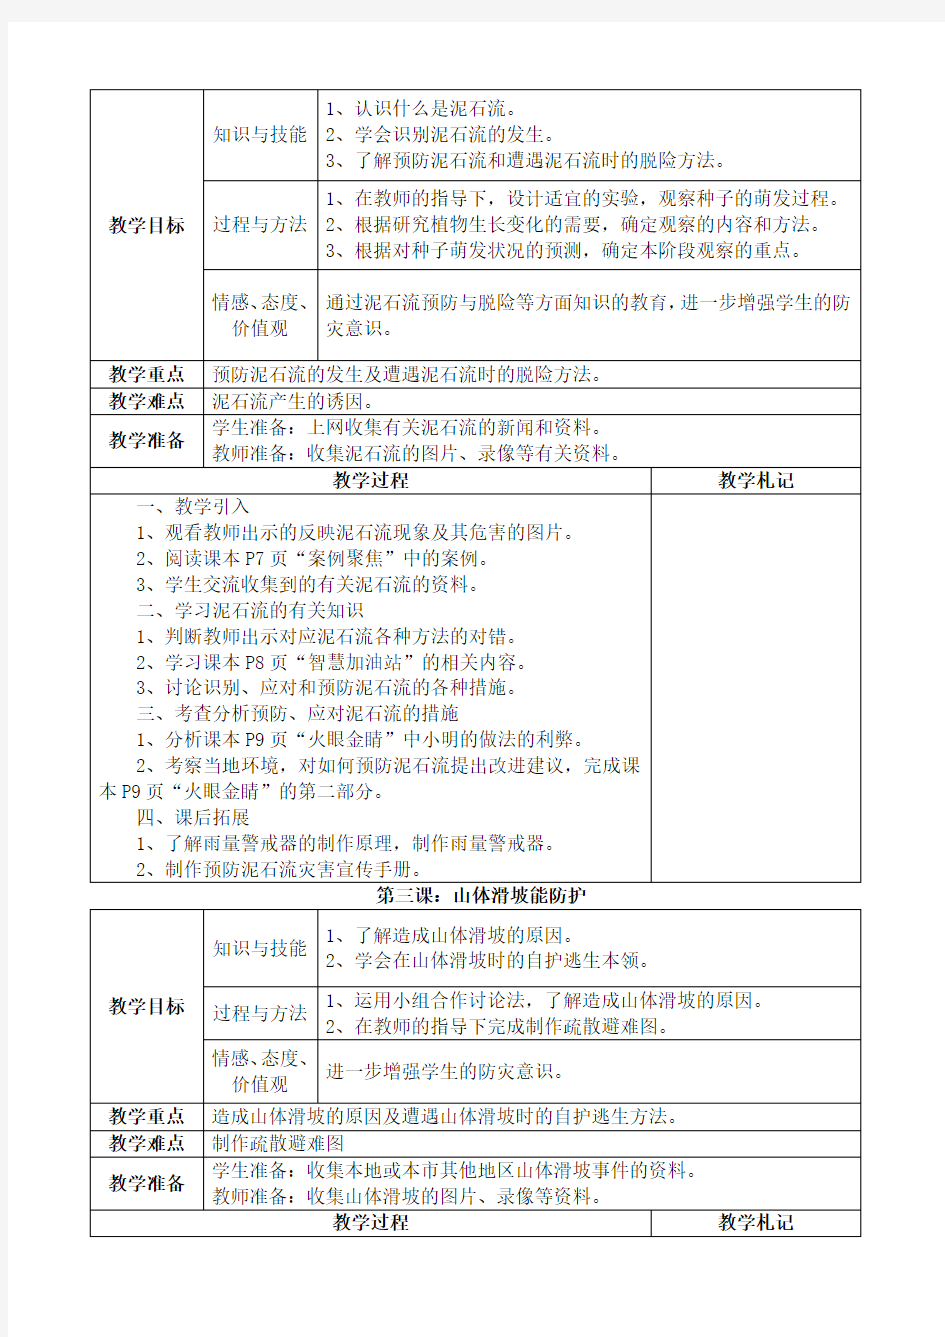 上海科技教育出版社六年级综合实践教案(上册)